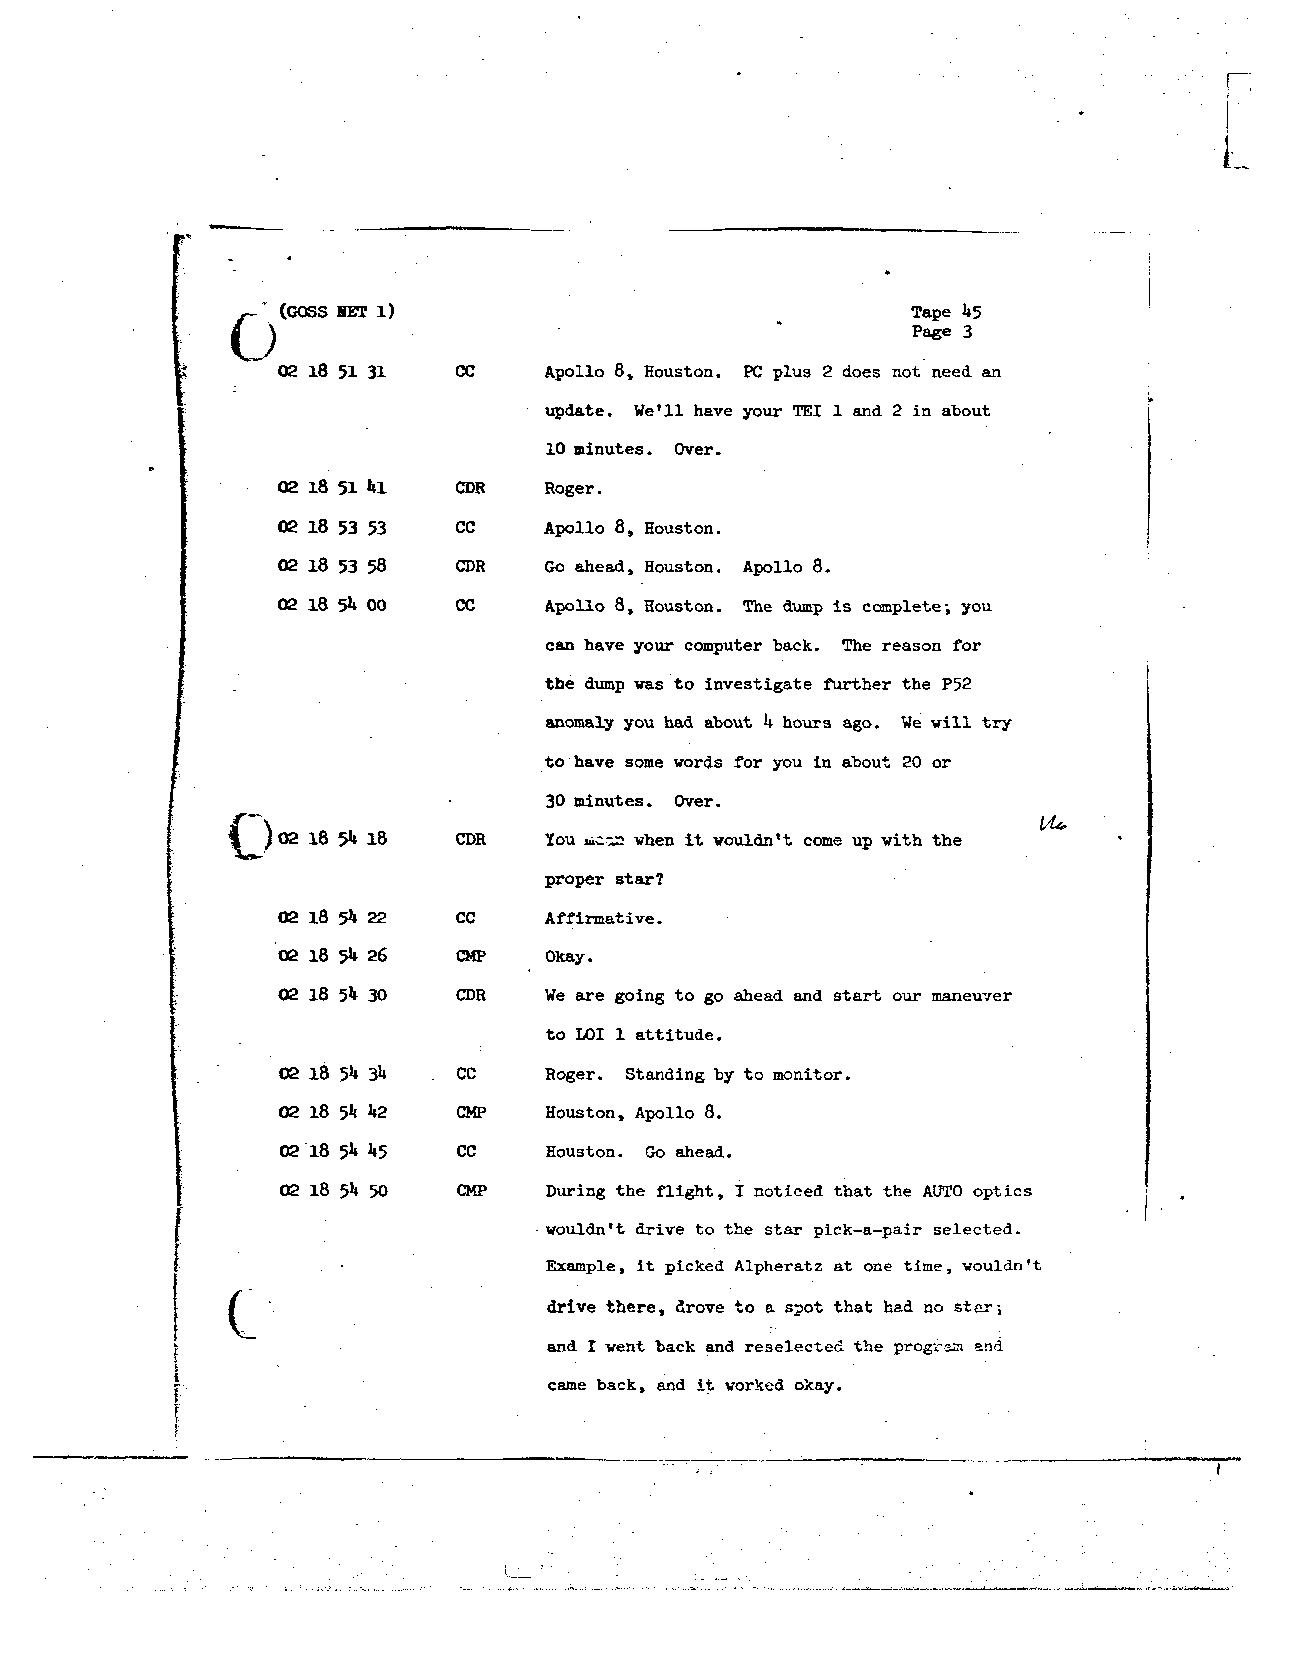 Page 342 of Apollo 8’s original transcript